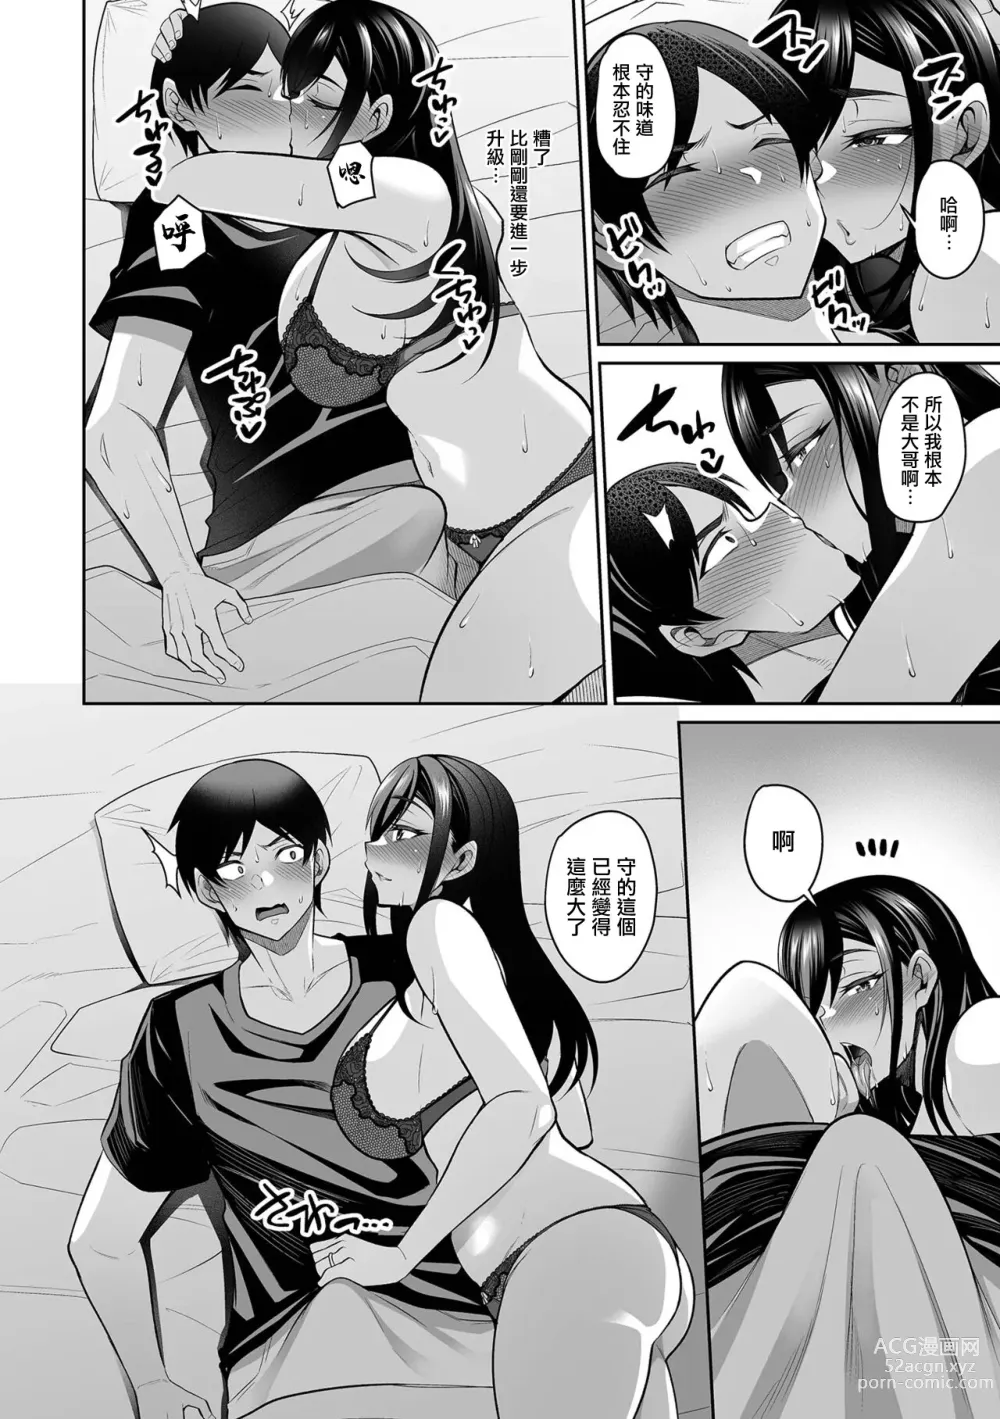 Page 6 of manga NikYobai Aniyome